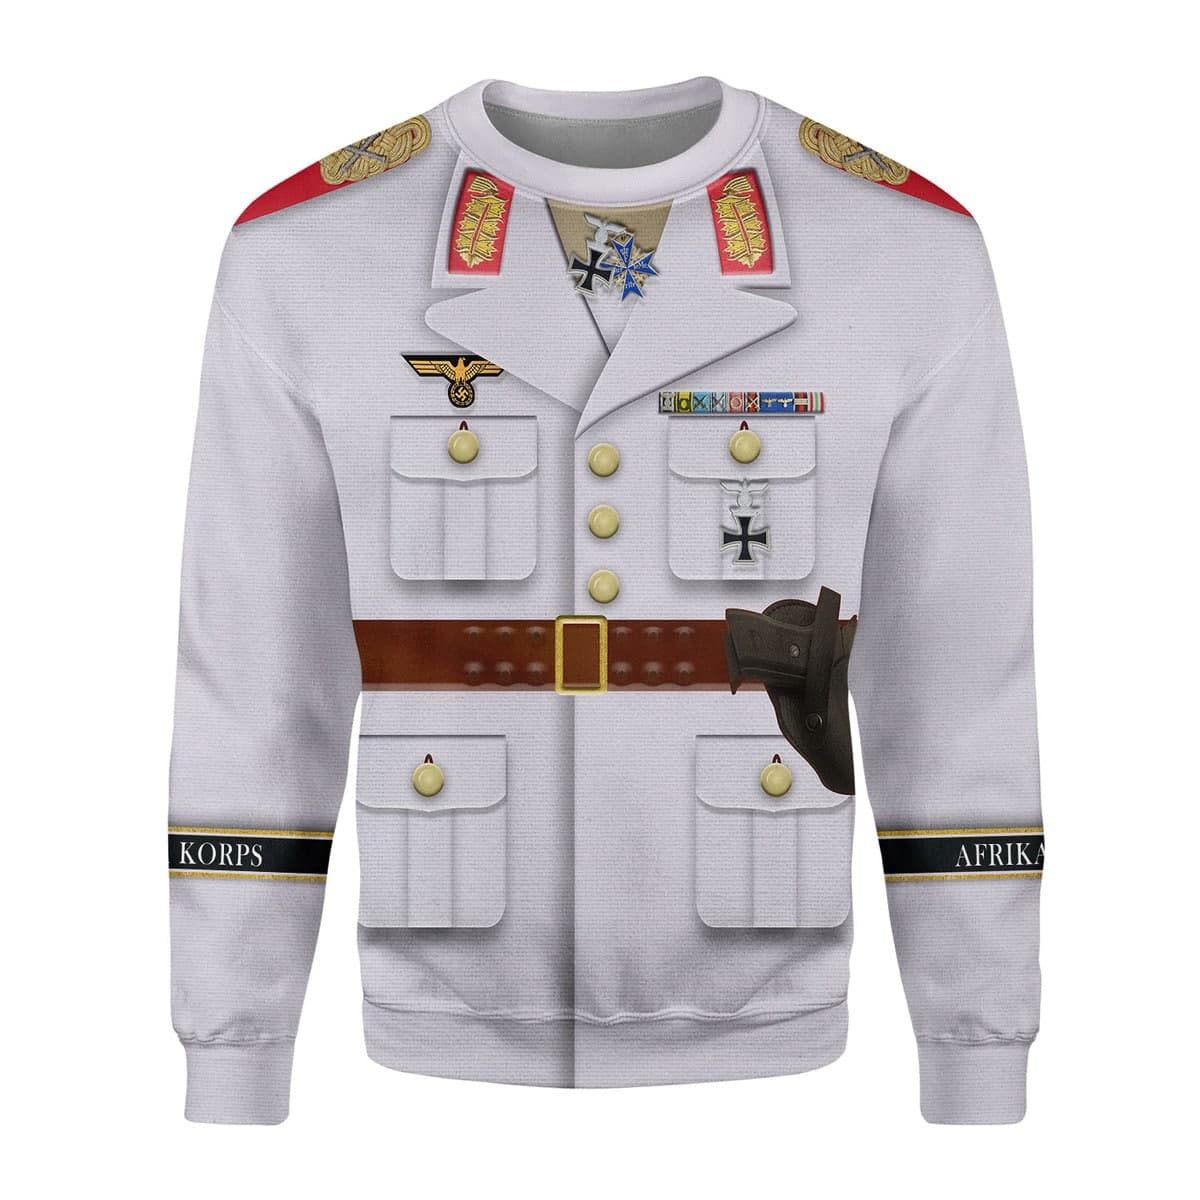 Gearhomie Erwin Rommel WWII German Soldier Costume sweatshirt